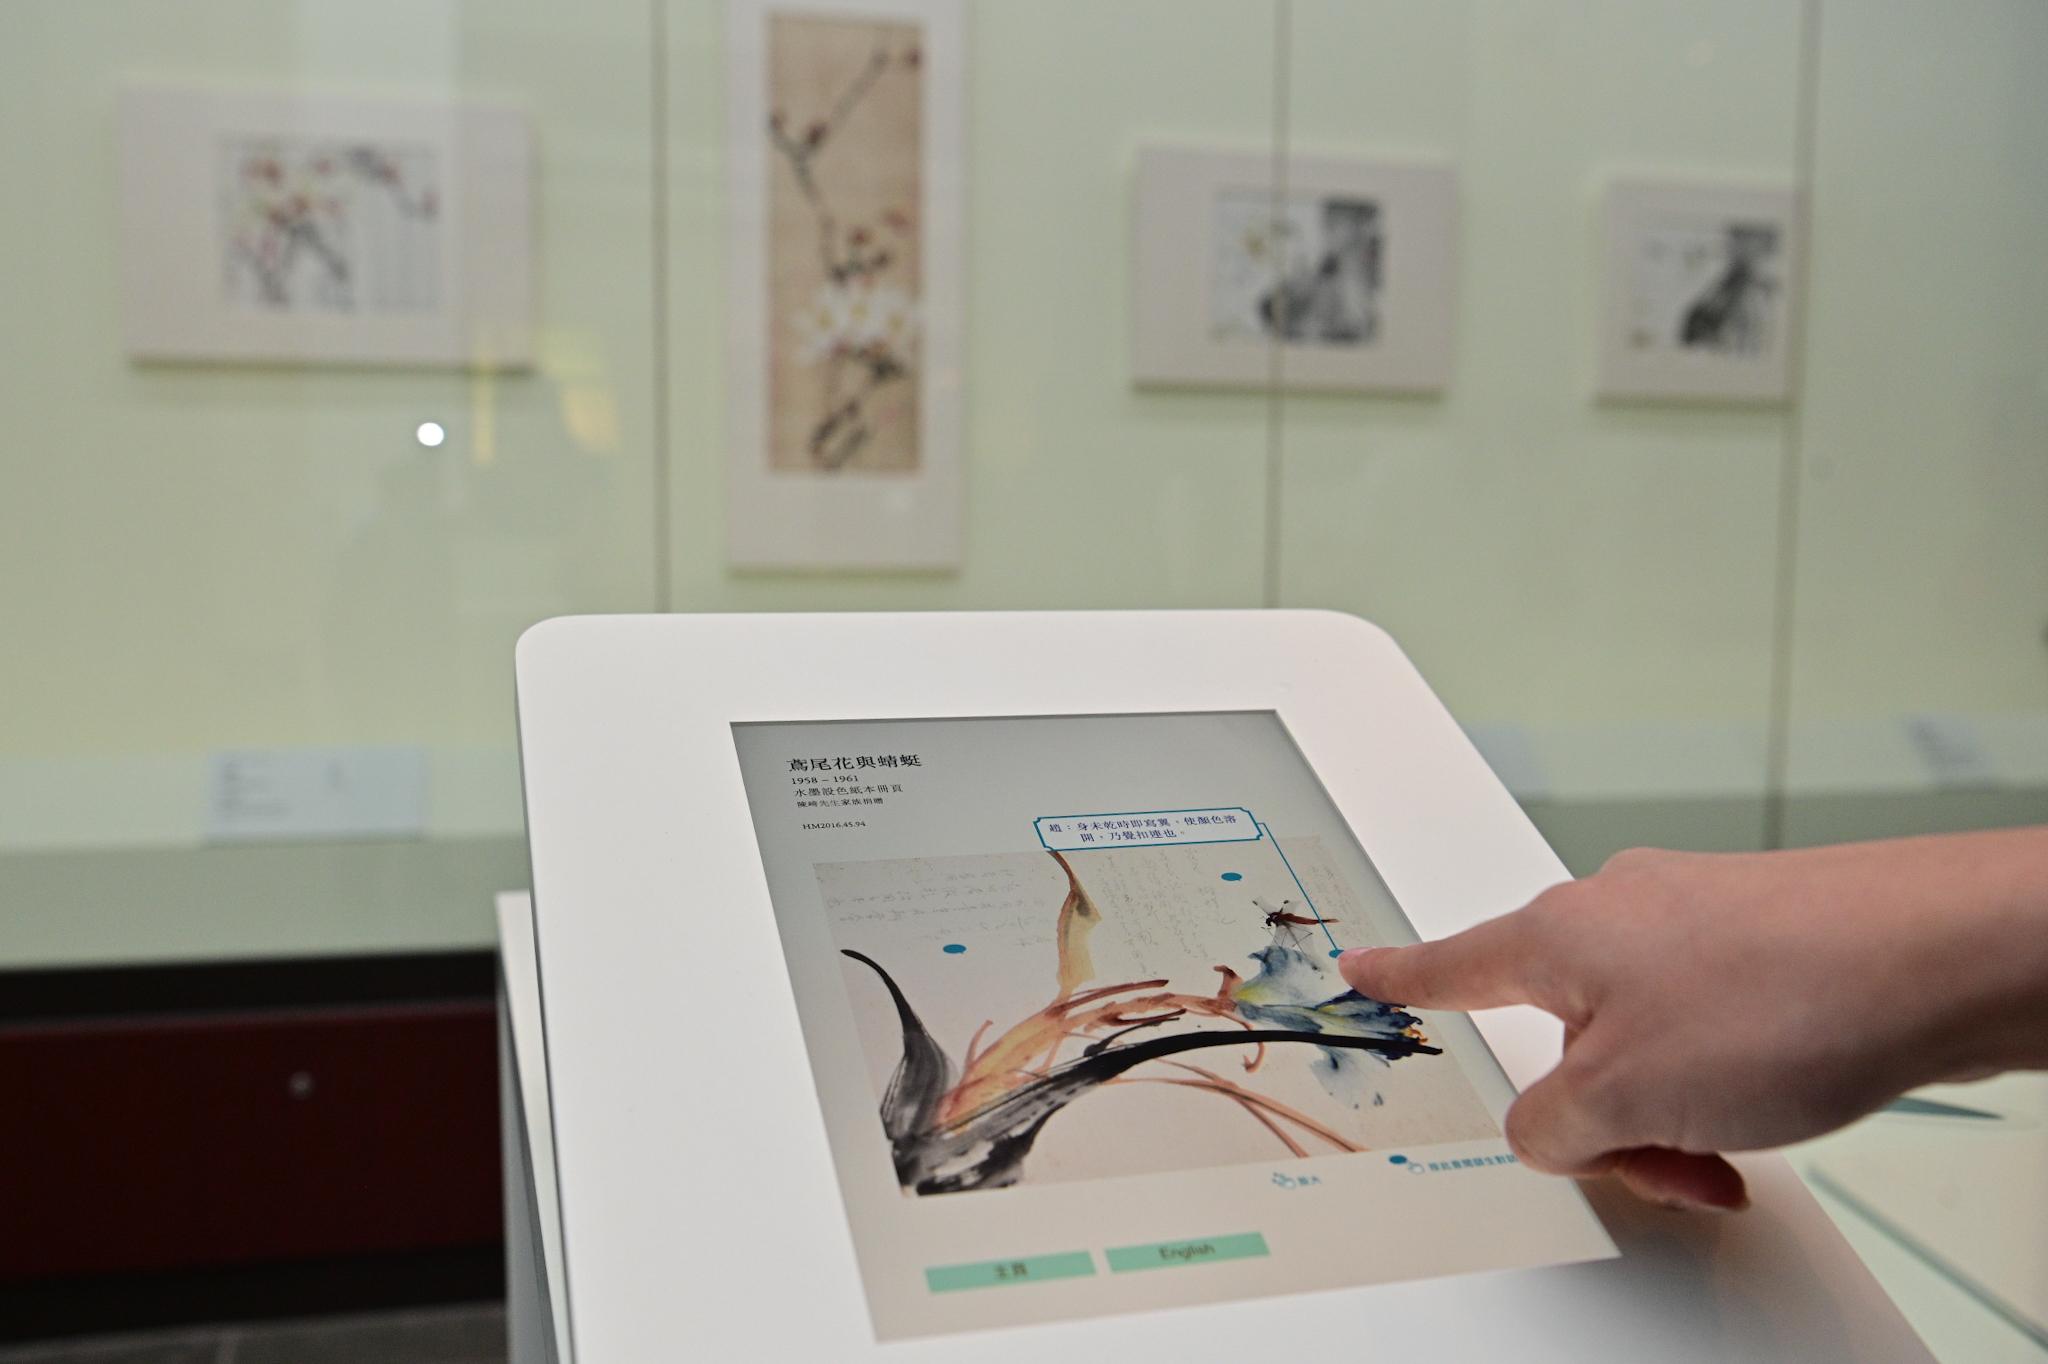 香港文化博物館明日（九月二十一日）起舉行「千里覓藝—趙少昂與陳崎師生對話」展覽。圖示展廳內其中一部電子互動裝置，讓觀眾可以細閱趙少昂與陳崎在畫作上的互動及交流。